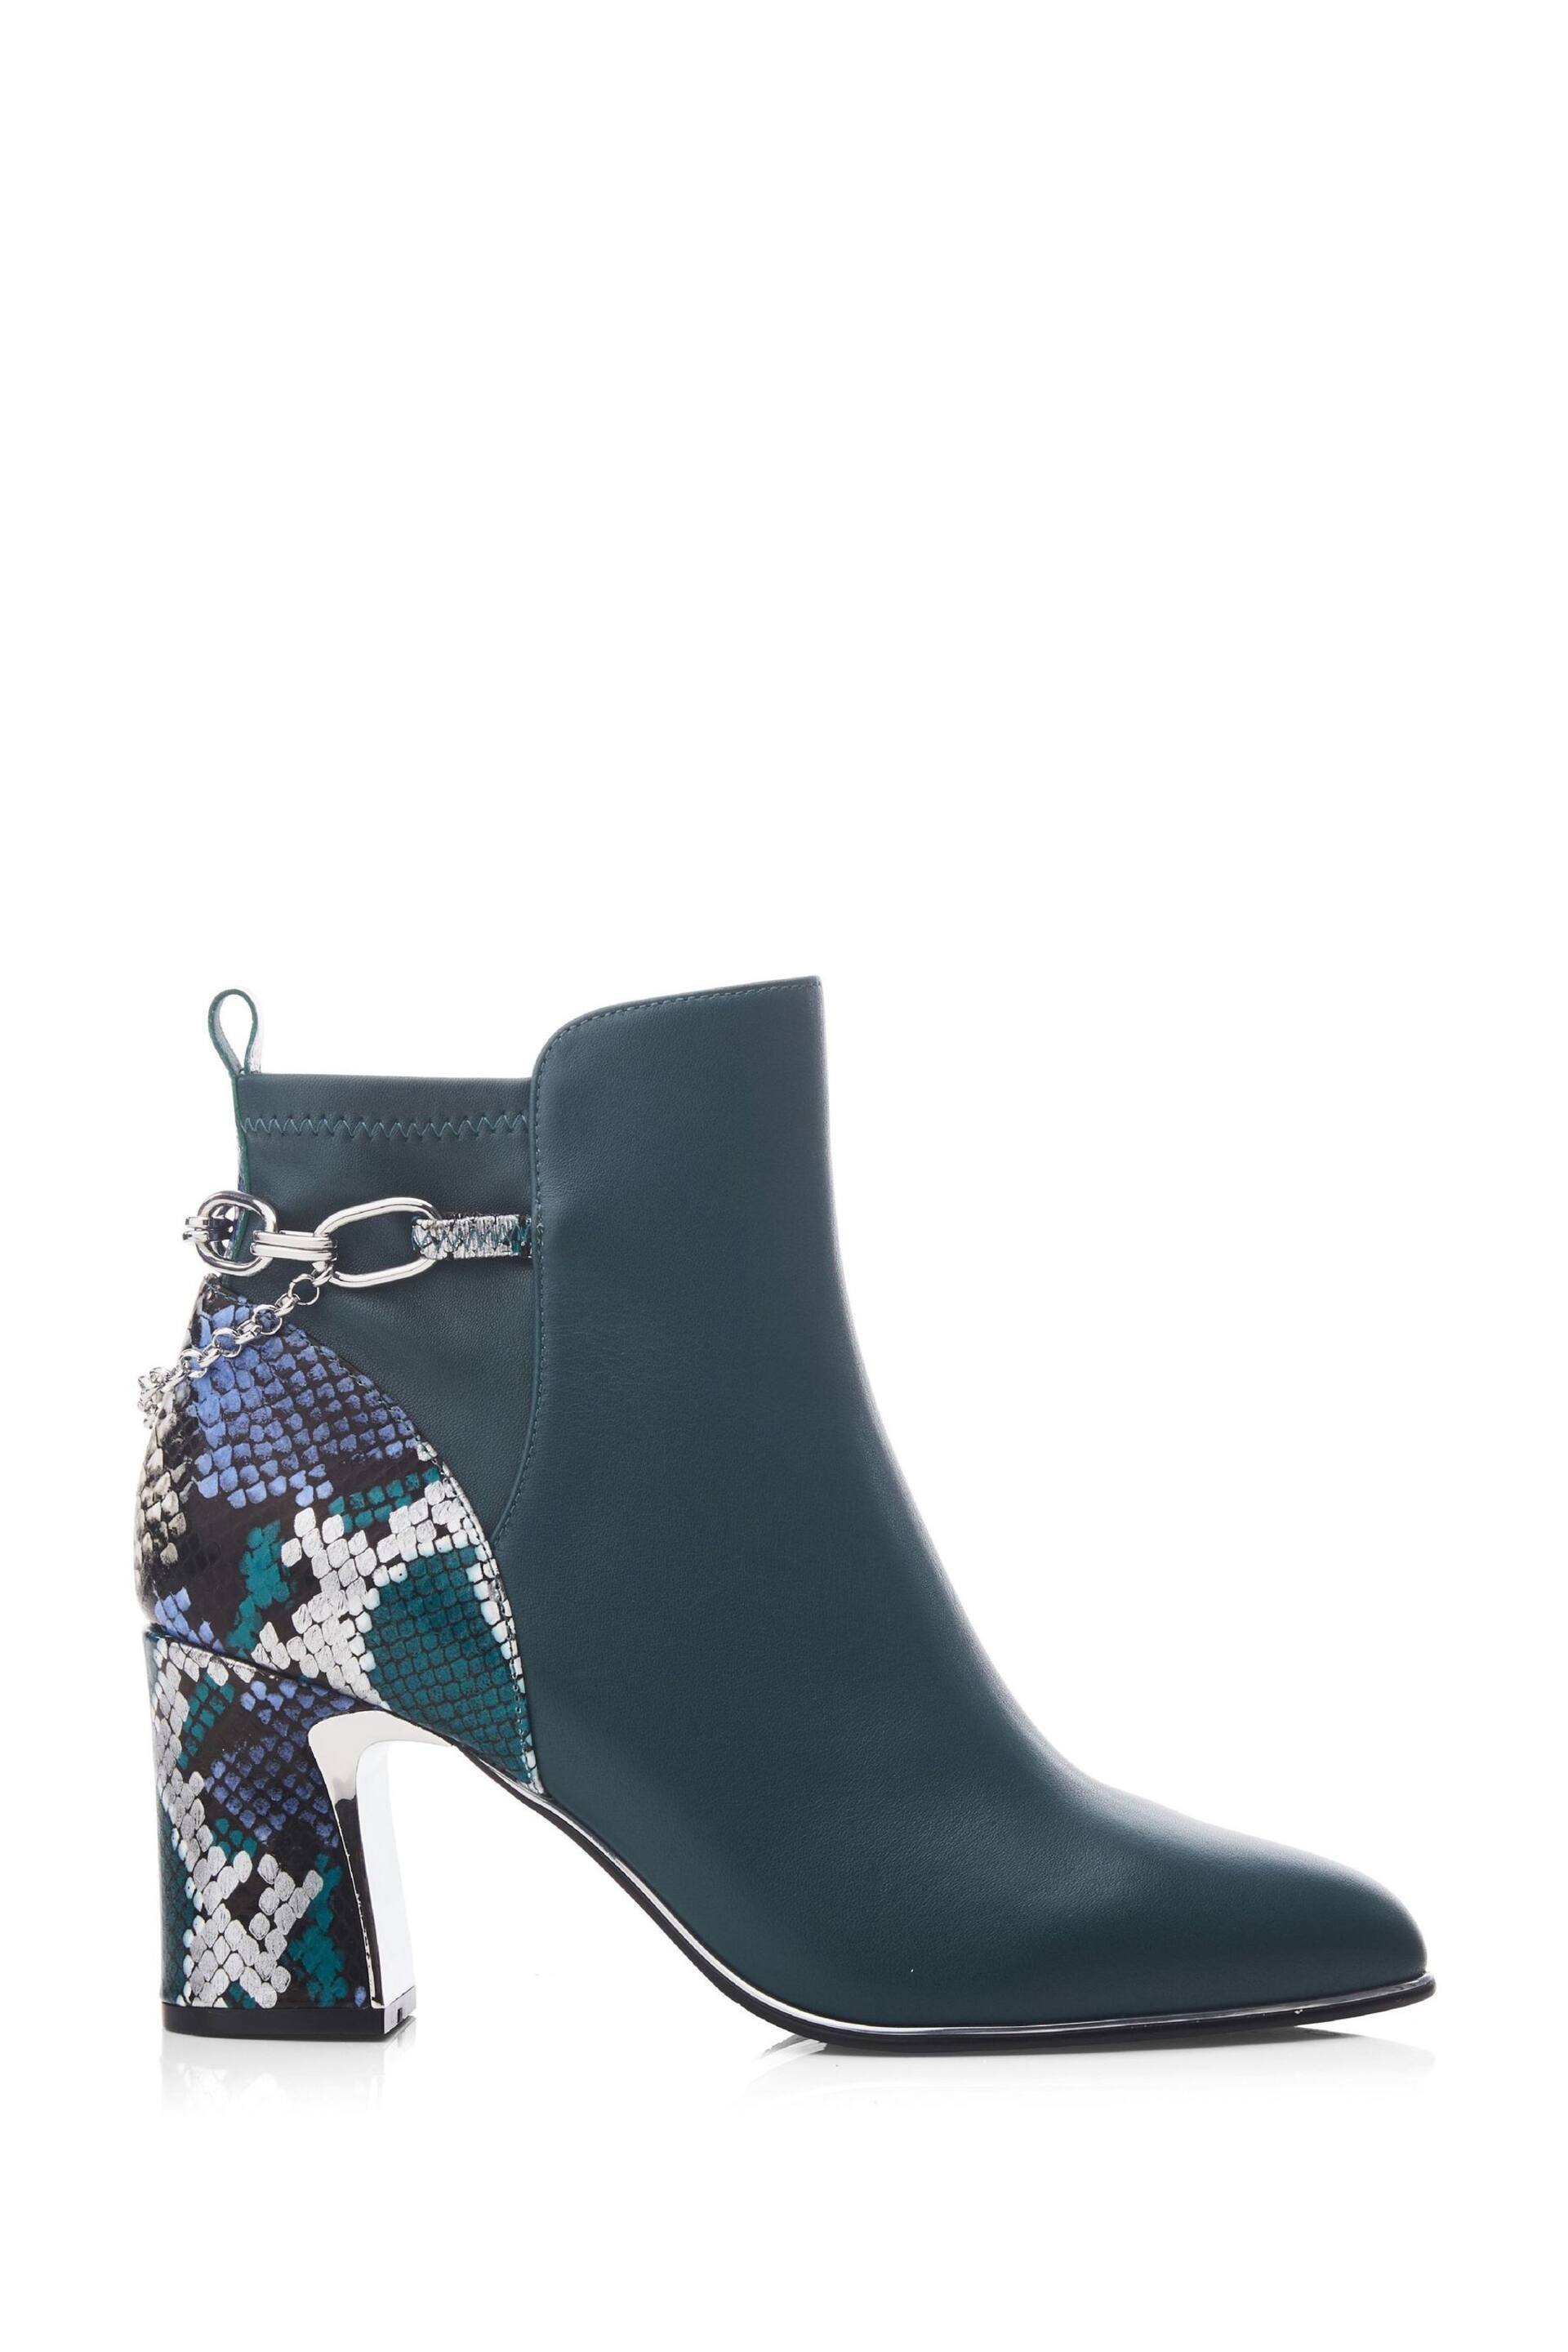 Moda in Pelle Klarisa Swoosh Heel Smart Ankle Boots - Image 1 of 4